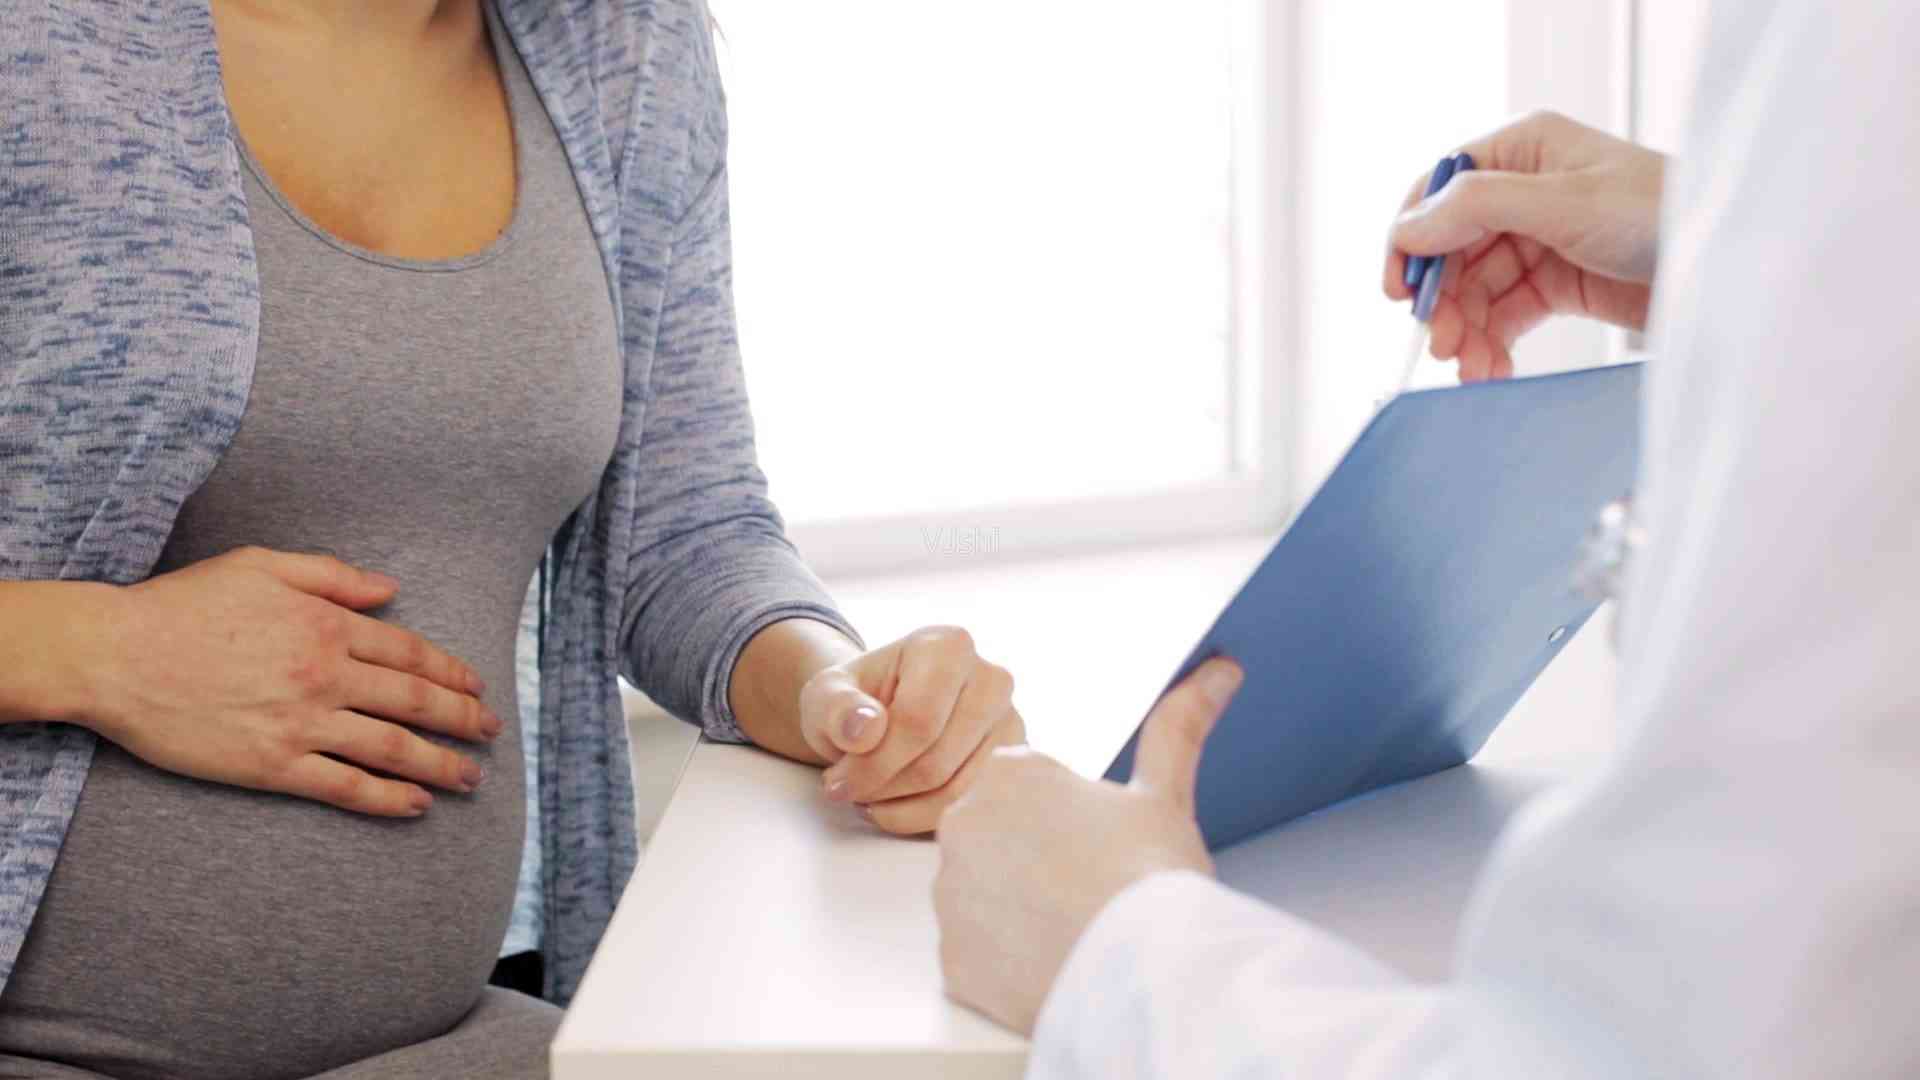 女性在孕初期会有早孕反应的伴随症状